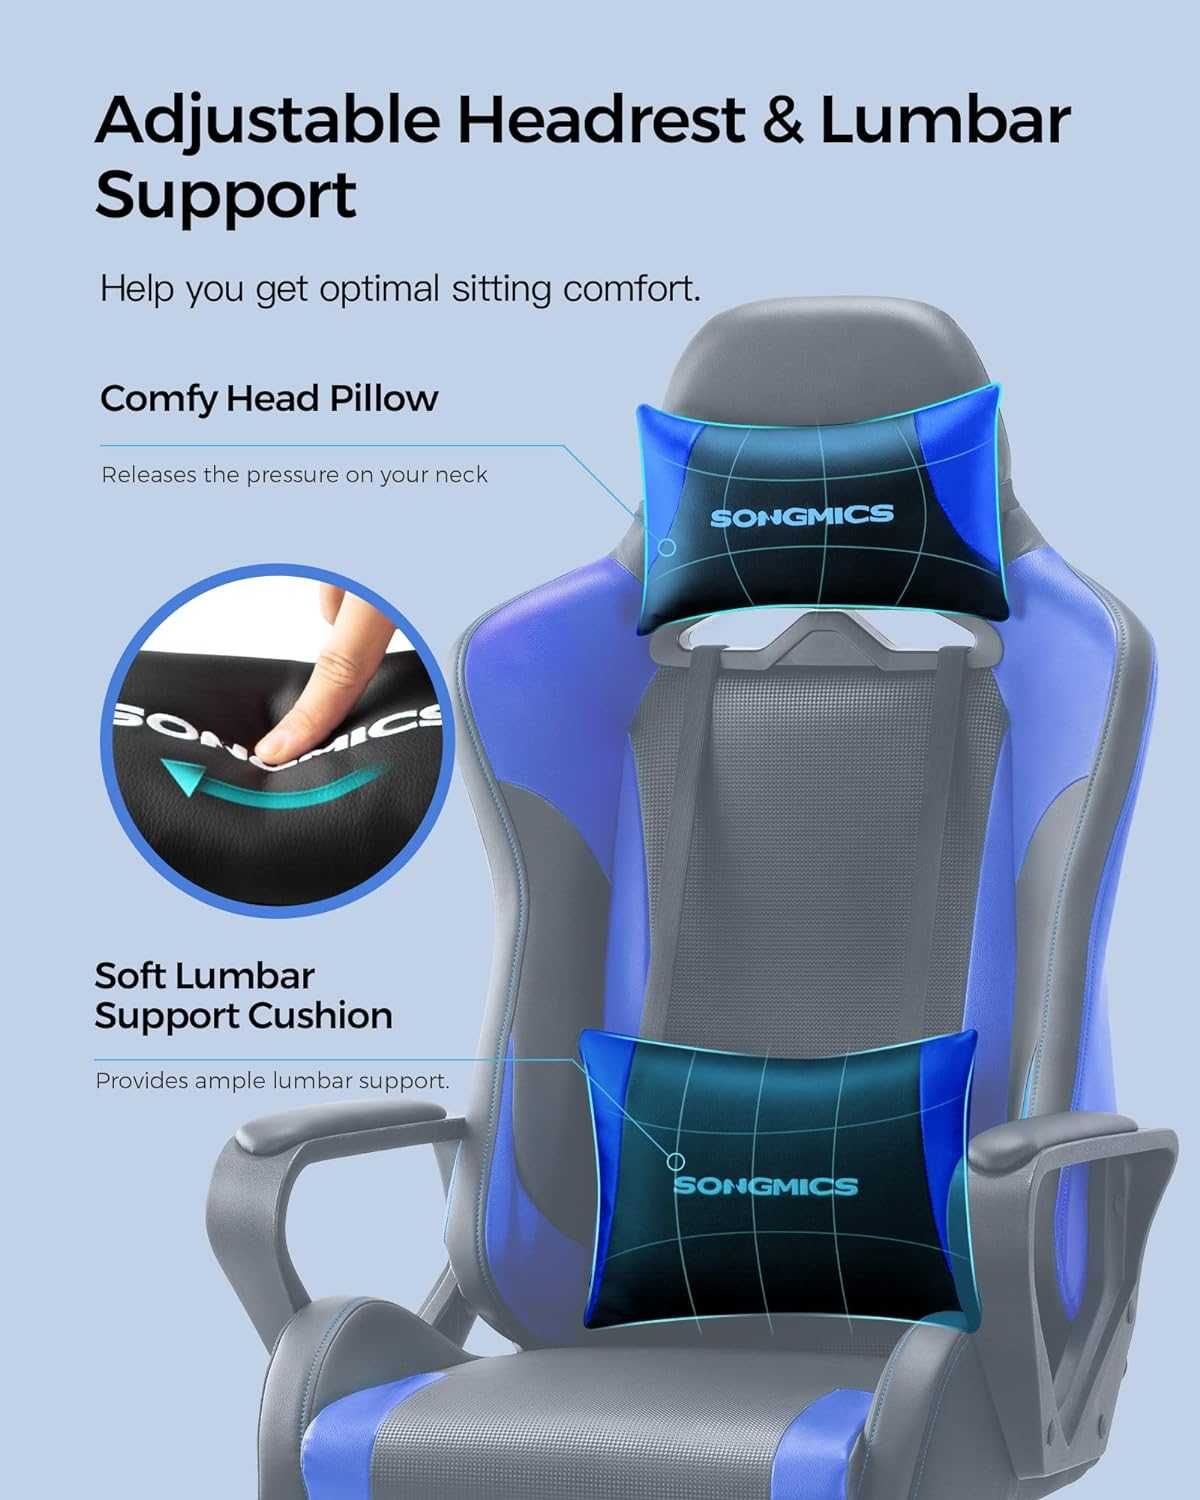 Krzesło obrotowe / fotel / ergonomiczny/ biurowe/ SONGMICS !6381!